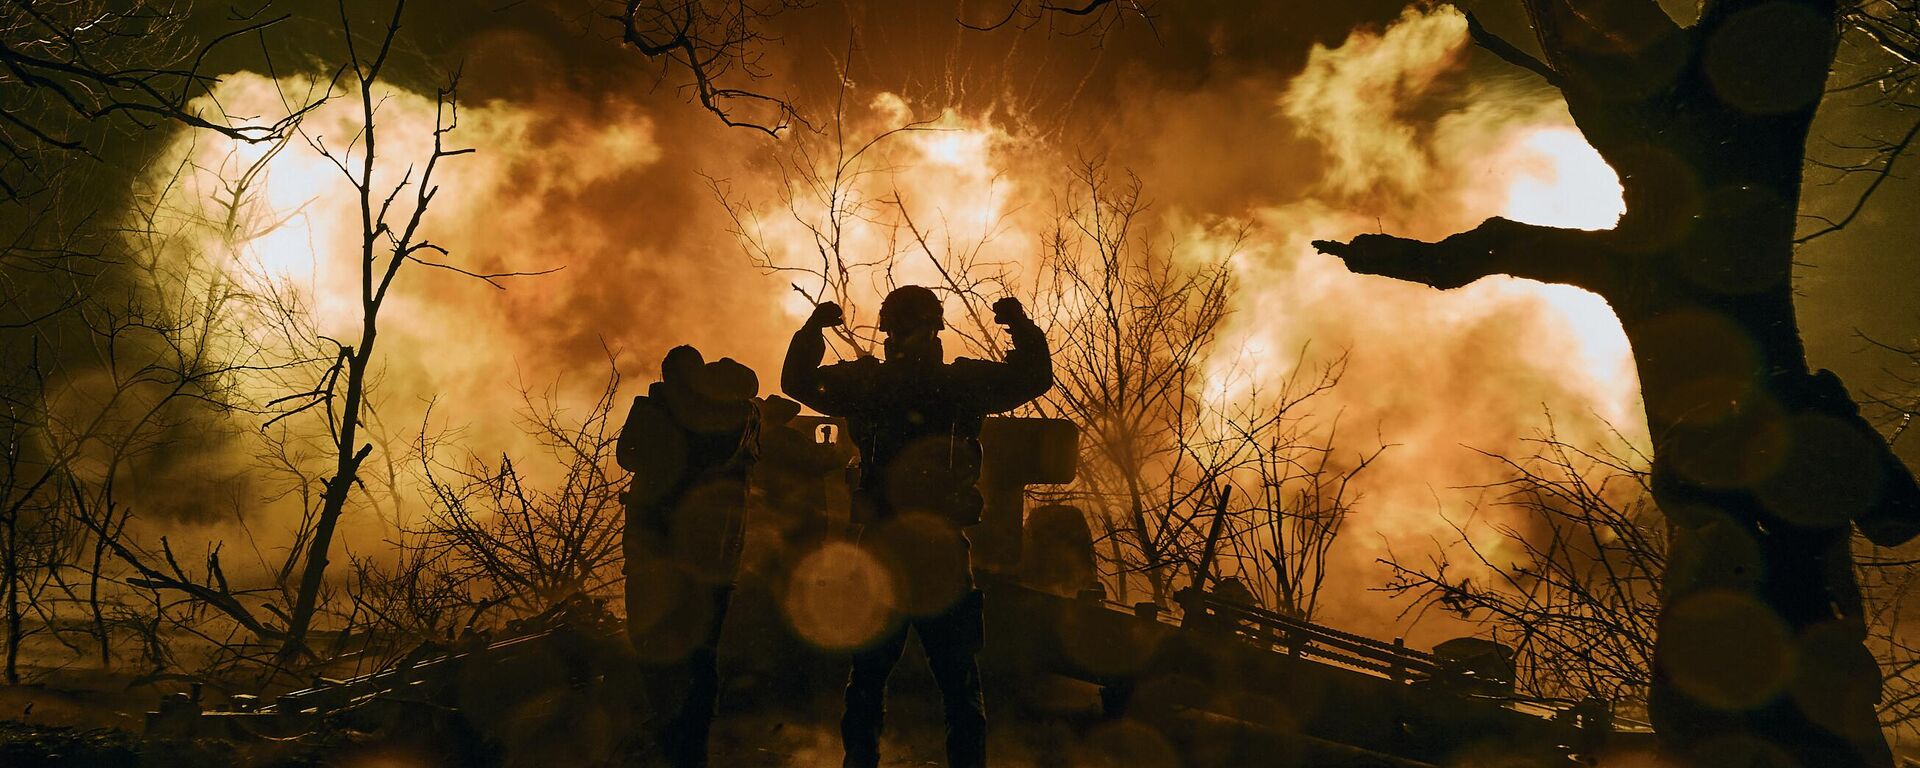  جنود أوكرانيون يطلقون نيران المدفعية على مواقع روسية بالقرب من باخموت في منطقة دونيتسك، 20 نوفمبر 2022.  - سبوتنيك عربي, 1920, 16.03.2023